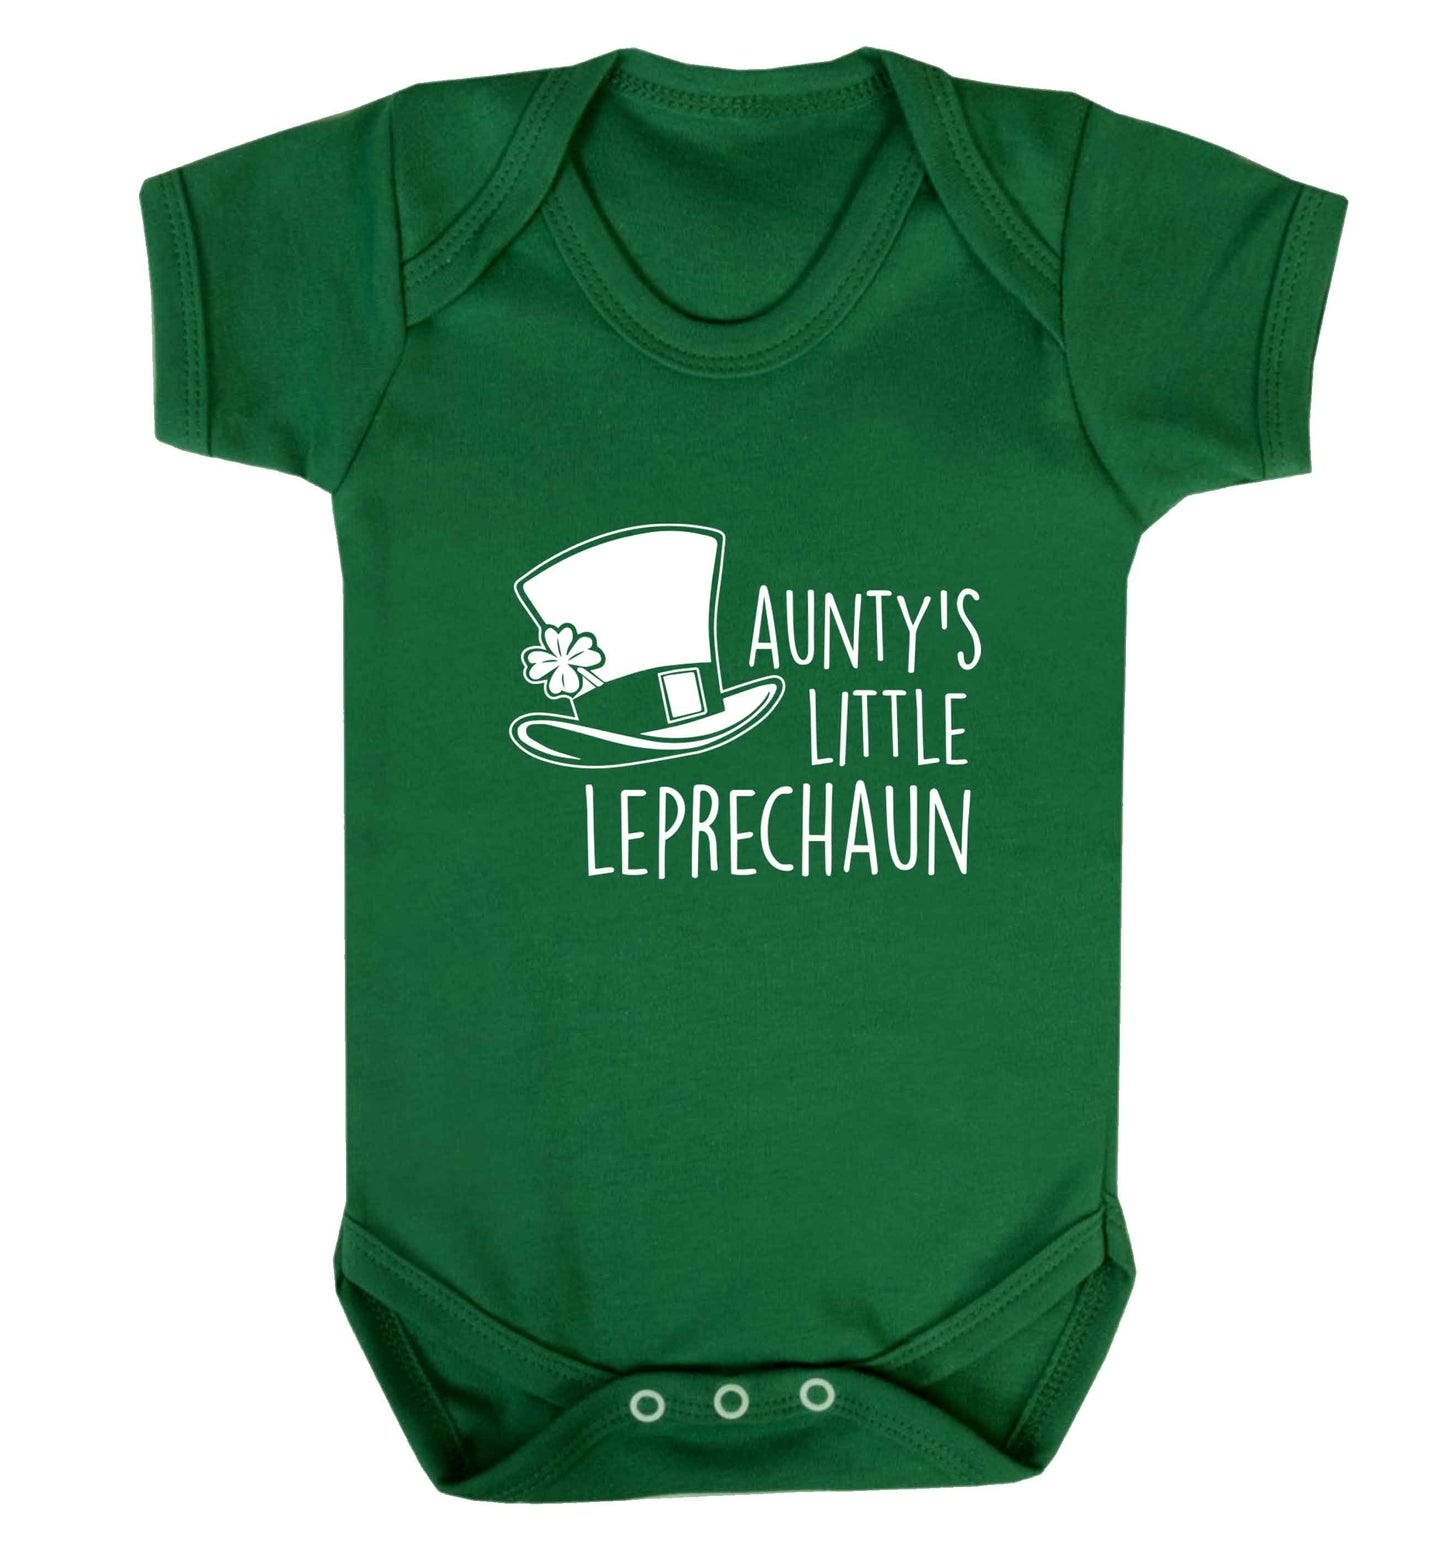 Aunty's little leprechaun baby vest green 18-24 months